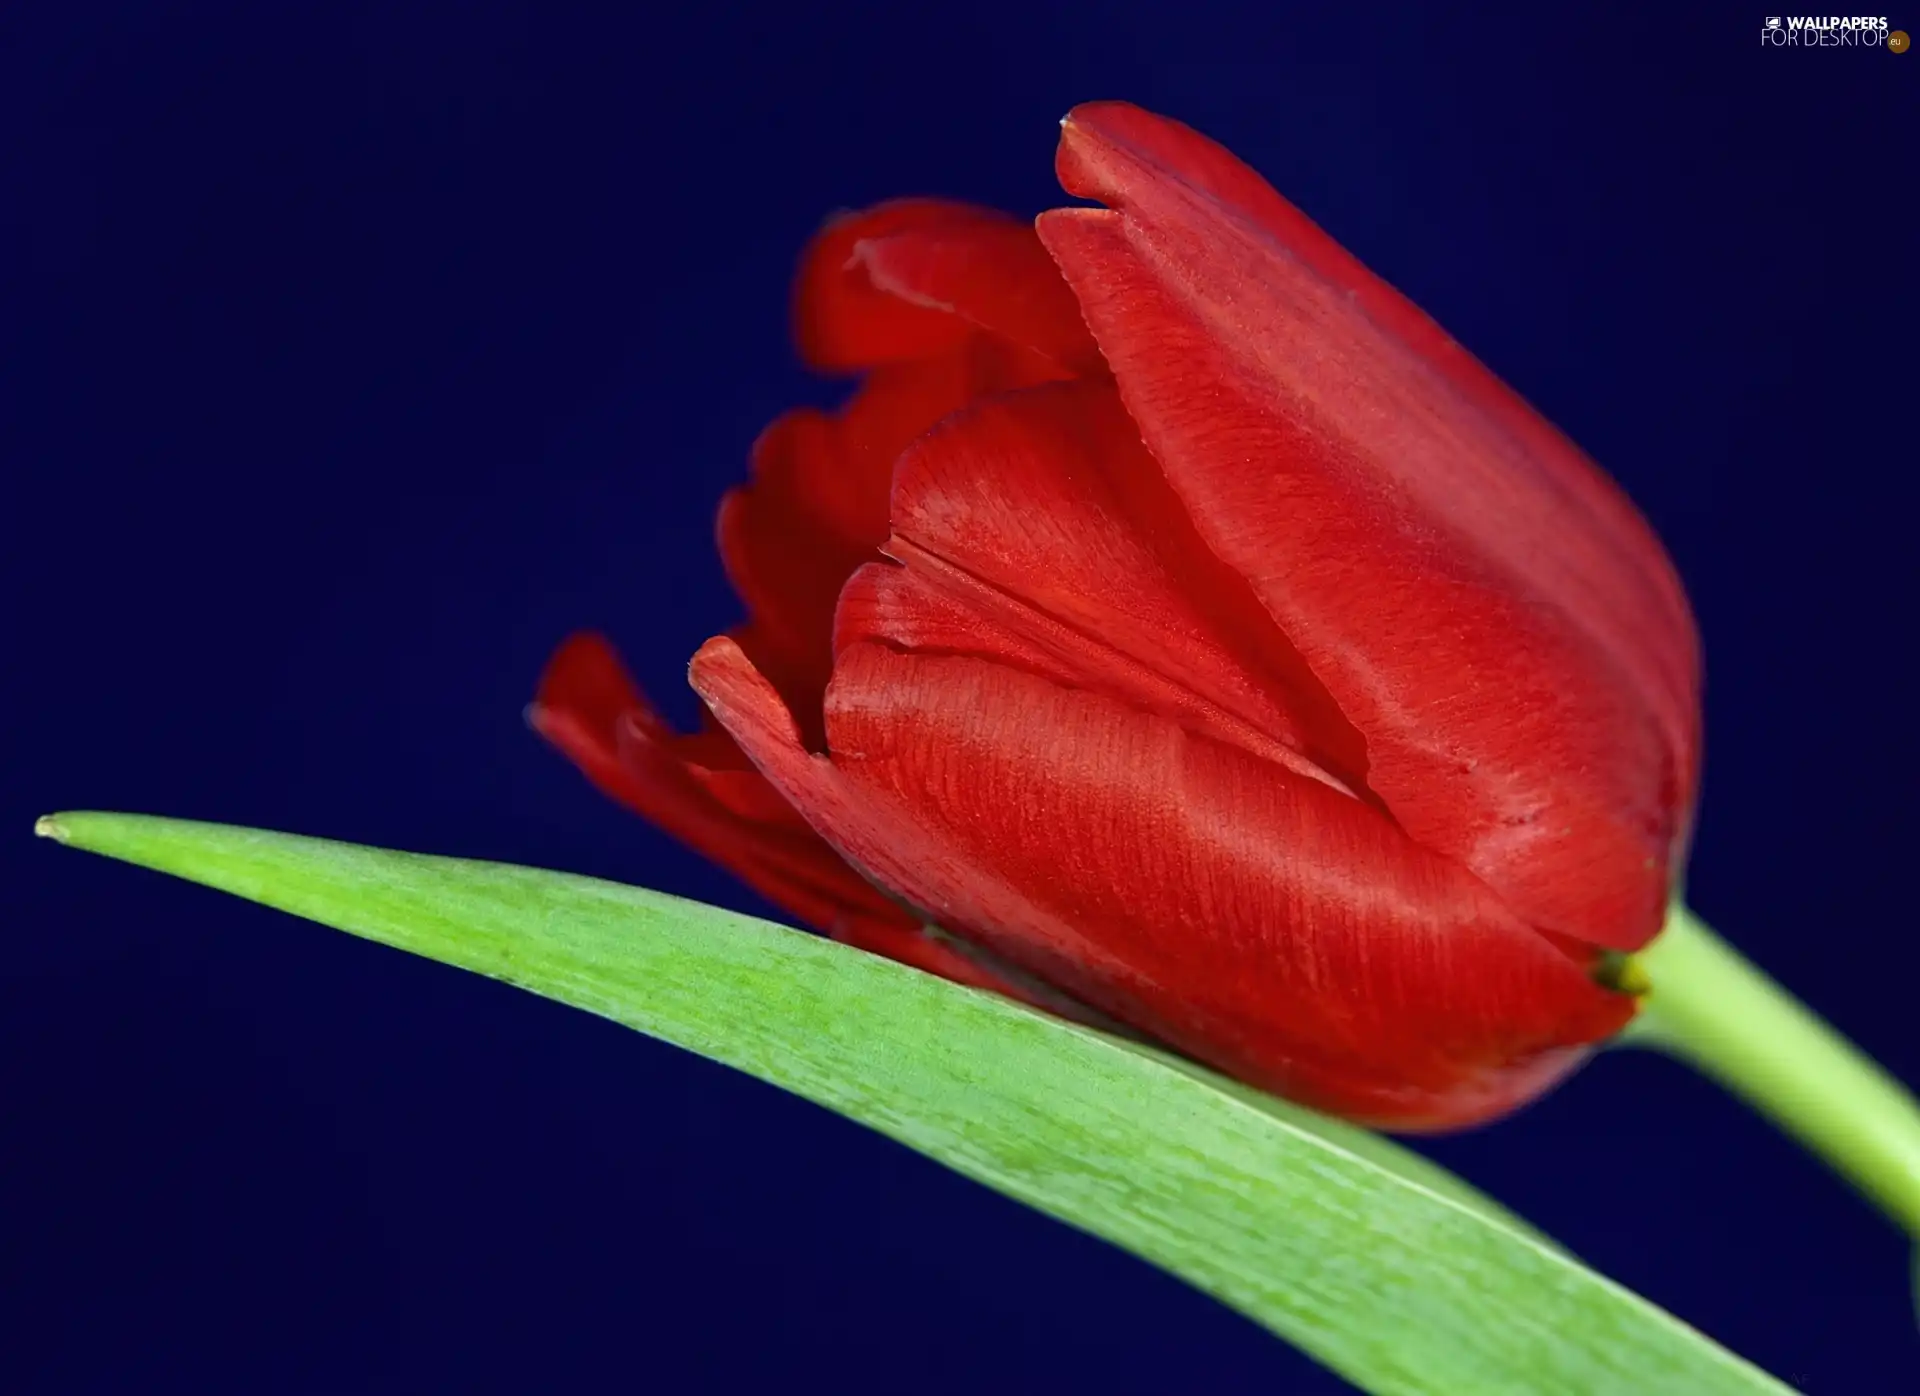 leaf, Red, tulip